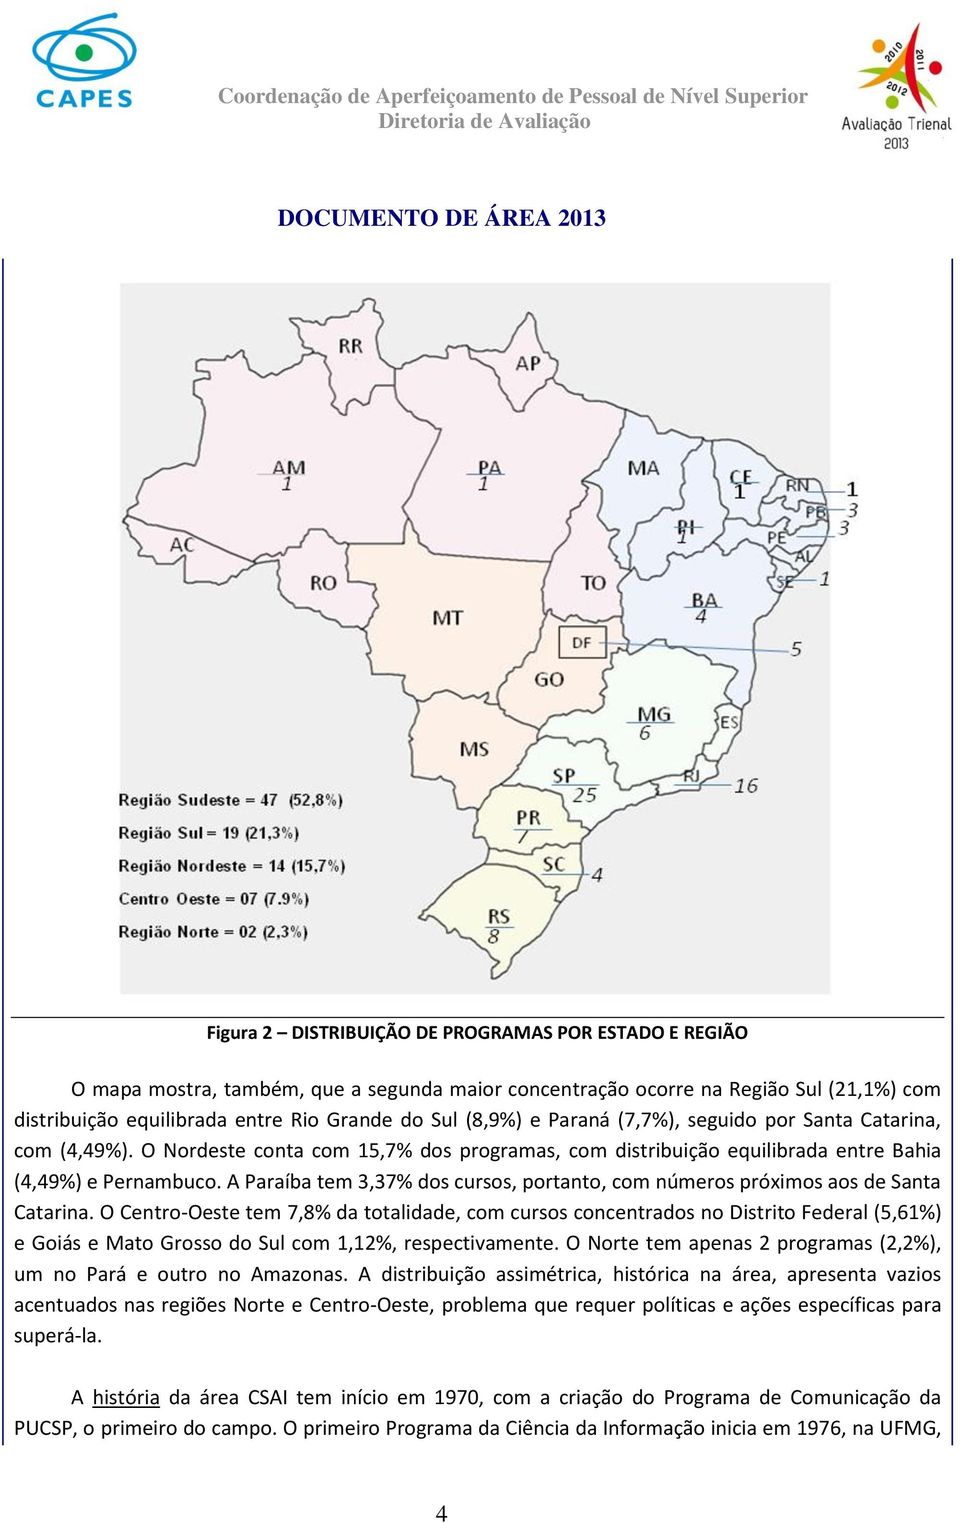 A Paraíba tem 3,37% dos cursos, portanto, com números próximos aos de Santa Catarina.